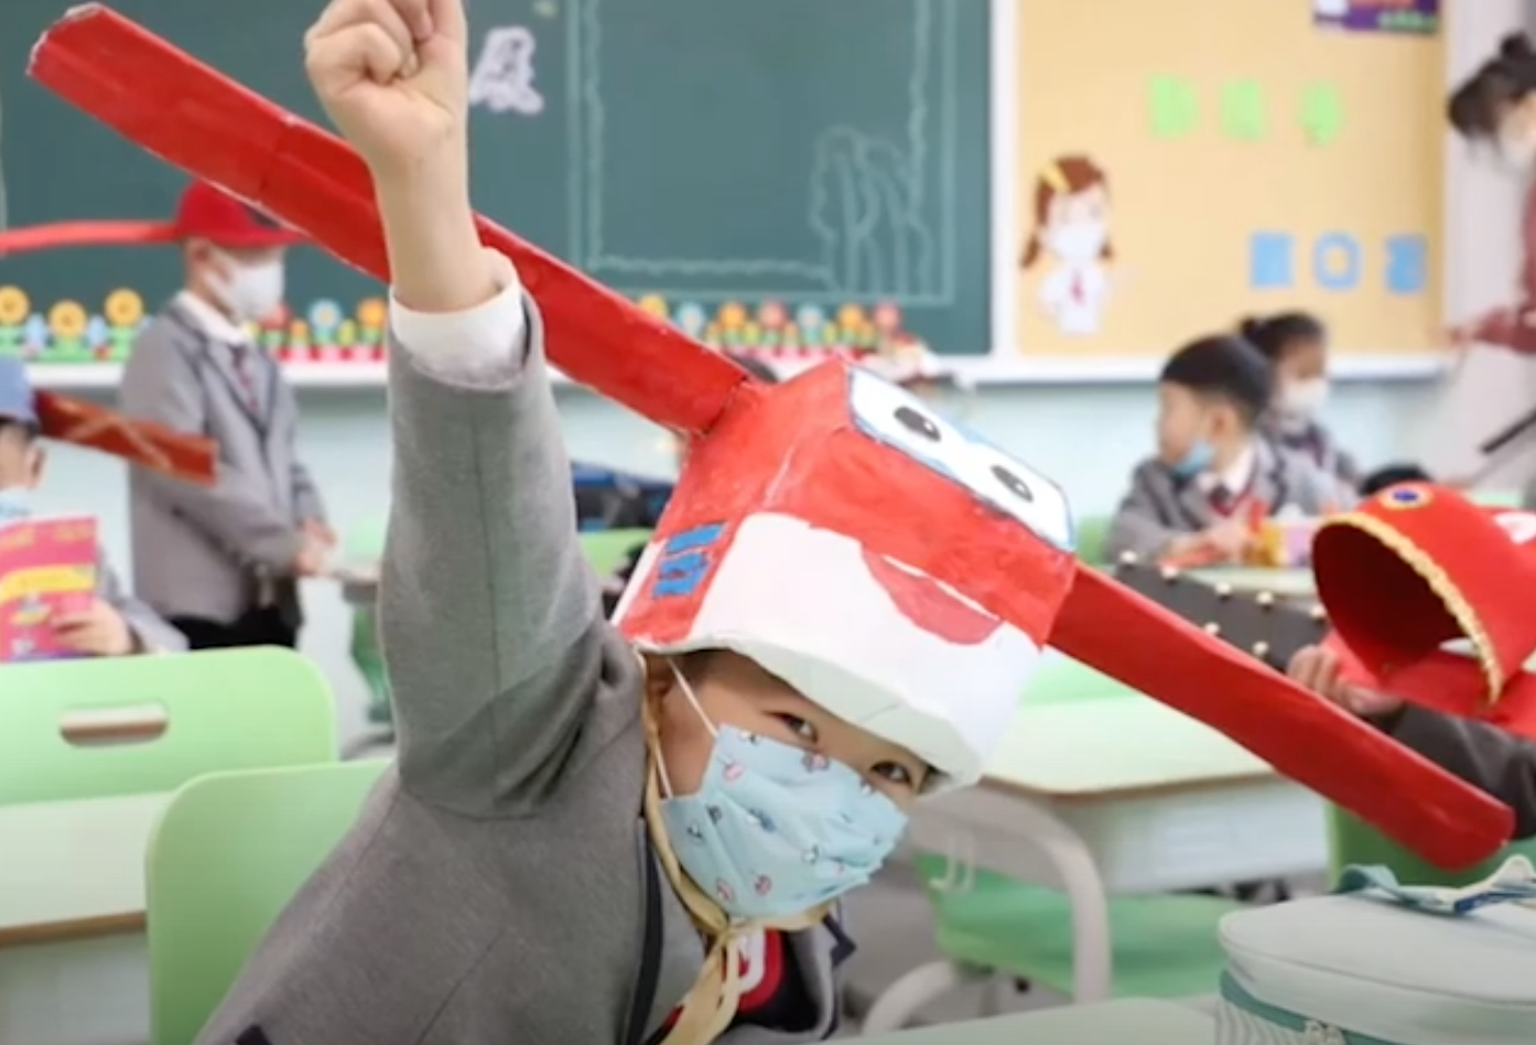 Hiina Hangzhou algkooli lapsed võivad küll õppetööd klassis jätkata, kuid nad peavad koroonaviiruse leviku tõkestamiseks kandma vahvaid mütse.